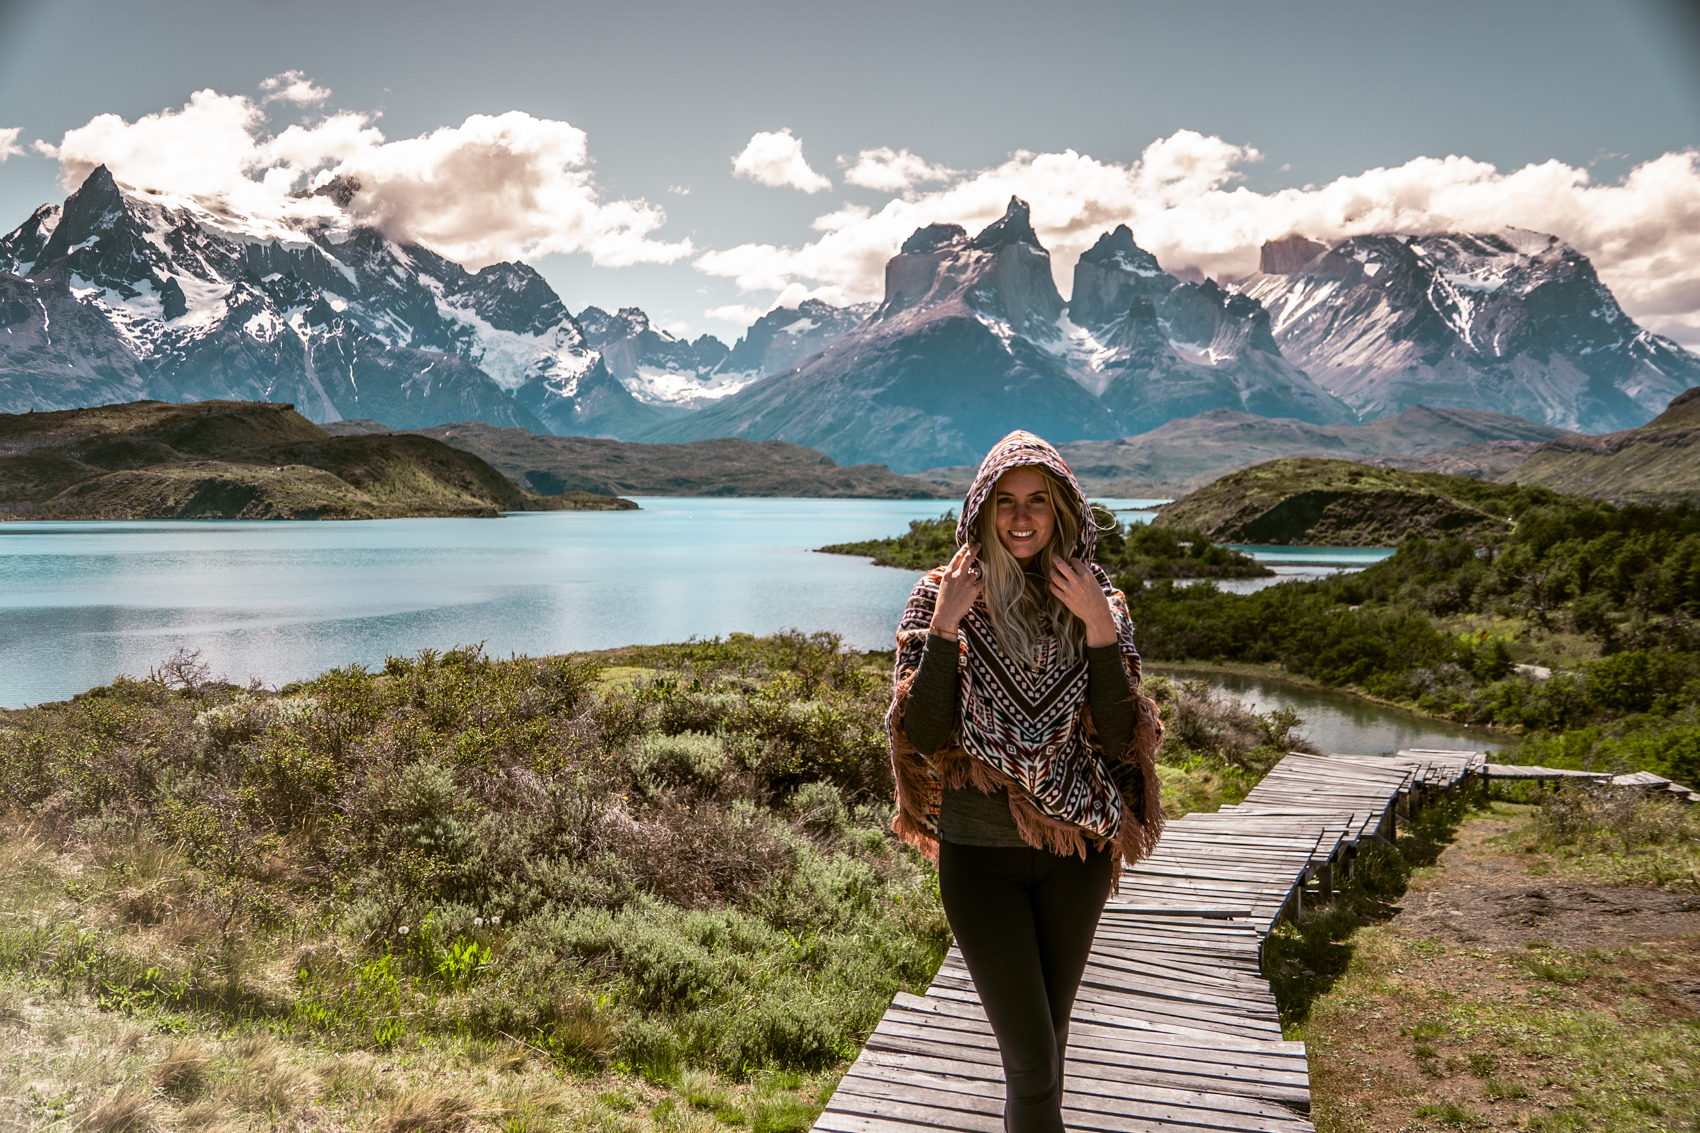 praktische informatie reizen door Torres del Paine National Park, Chili, Patagonië